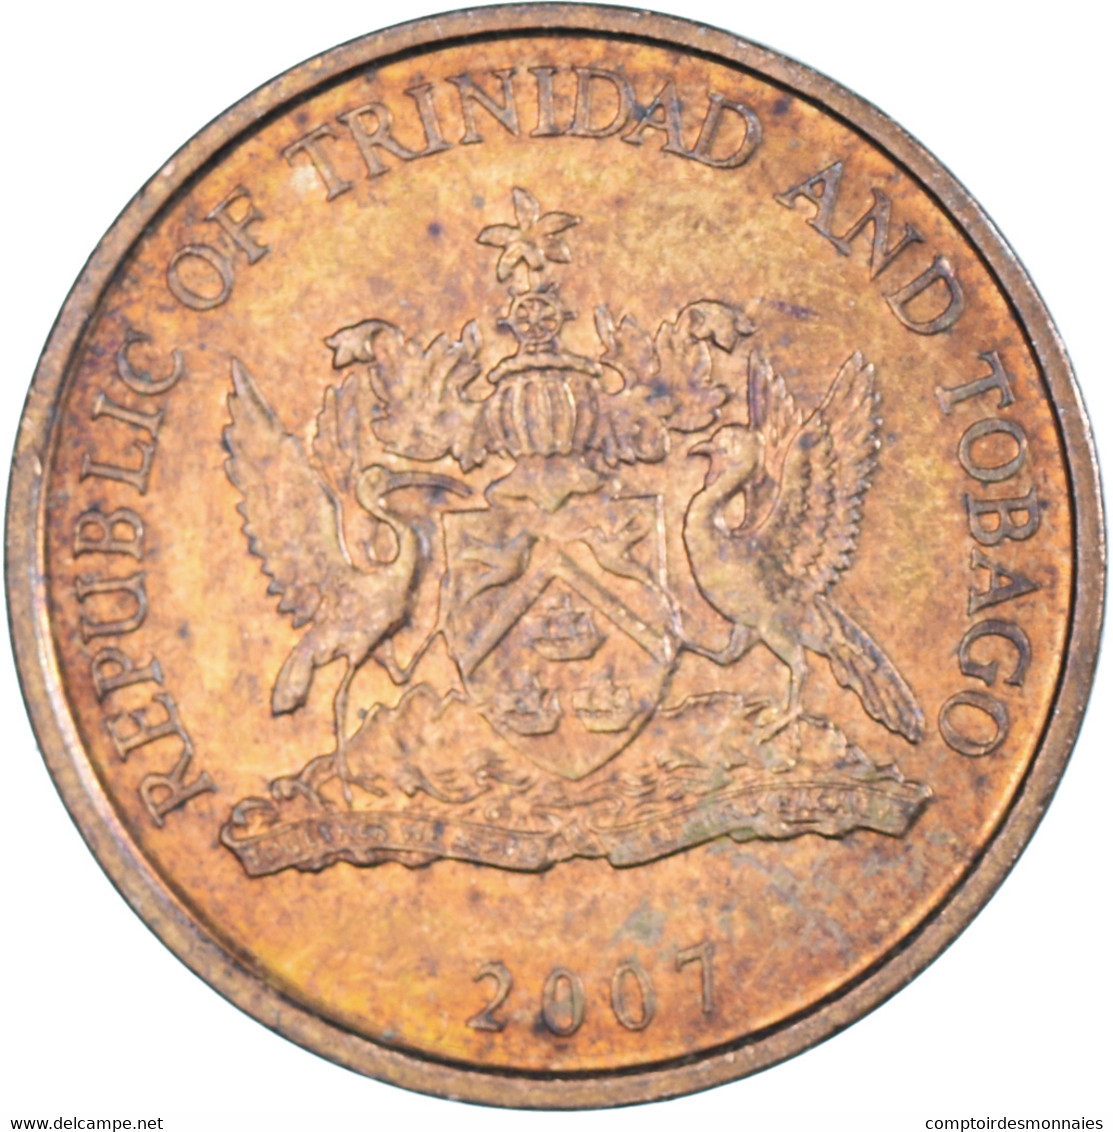 Monnaie, Trinité-et-Tobago, Cent, 2007 - Trinidad Y Tobago